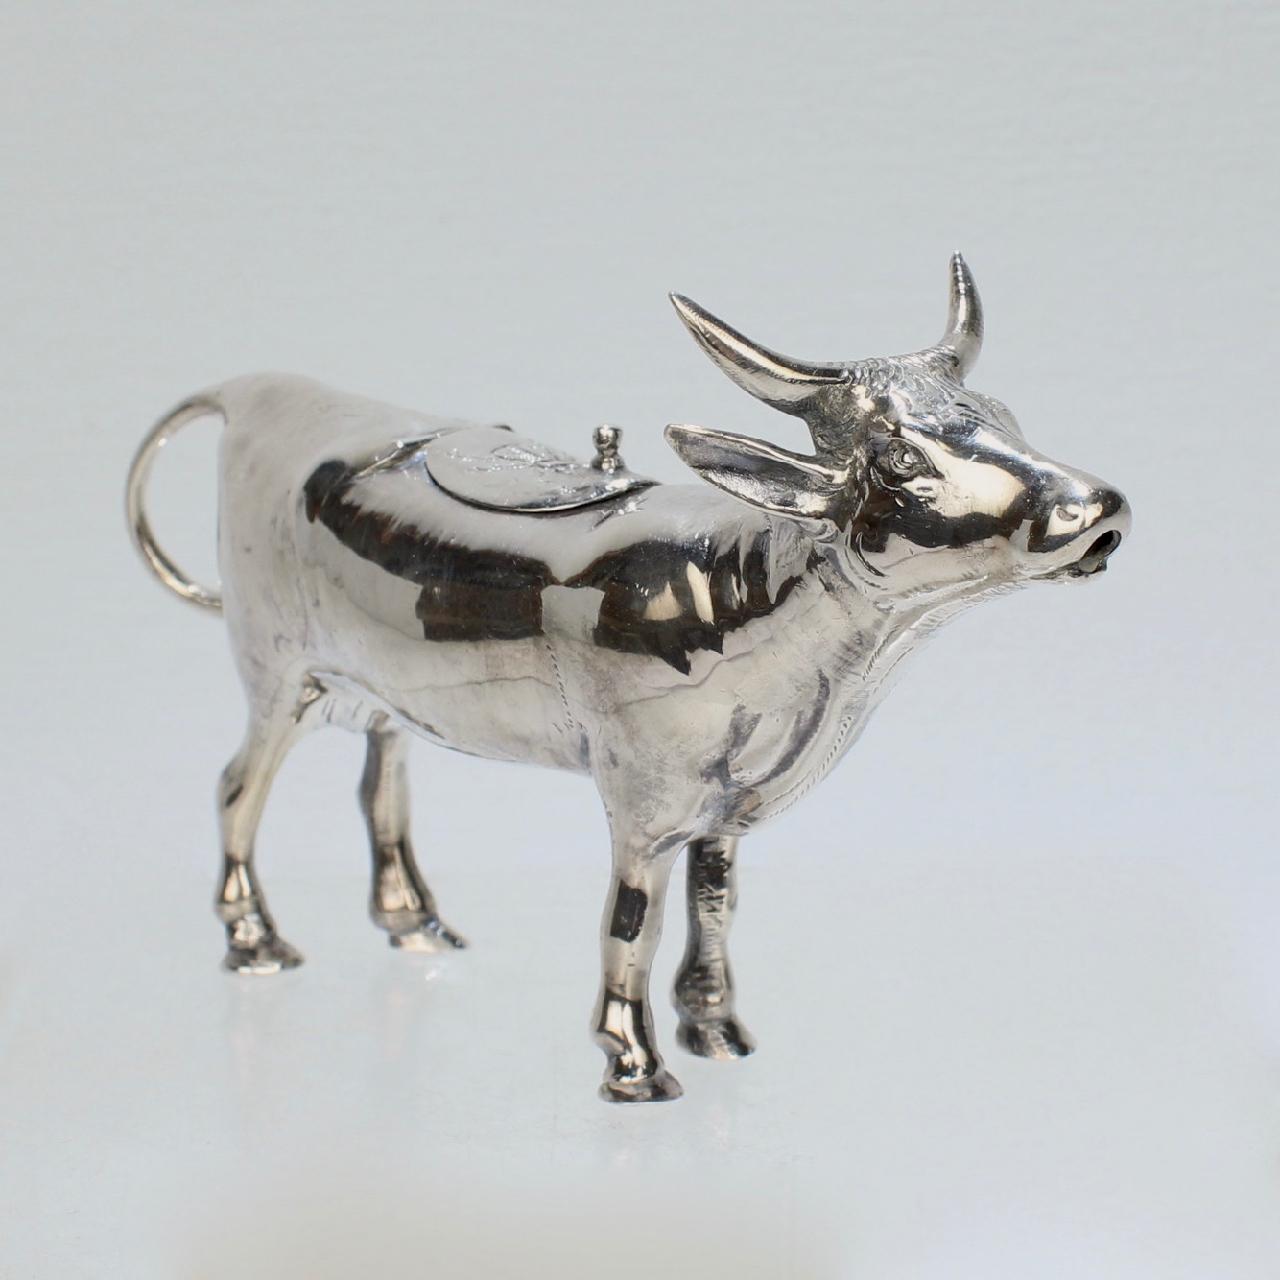 Ein sehr schönes figurales Milchkännchen aus Sterlingsilber von Israel Freeman & Son.

In Form einer Kuh mit einem Henkel mit Schlaufe, einem Scharnierdeckel auf der Rückseite und einer Tülle am Mund.

Ein wahrhaft skurriles Milchkännchen, das